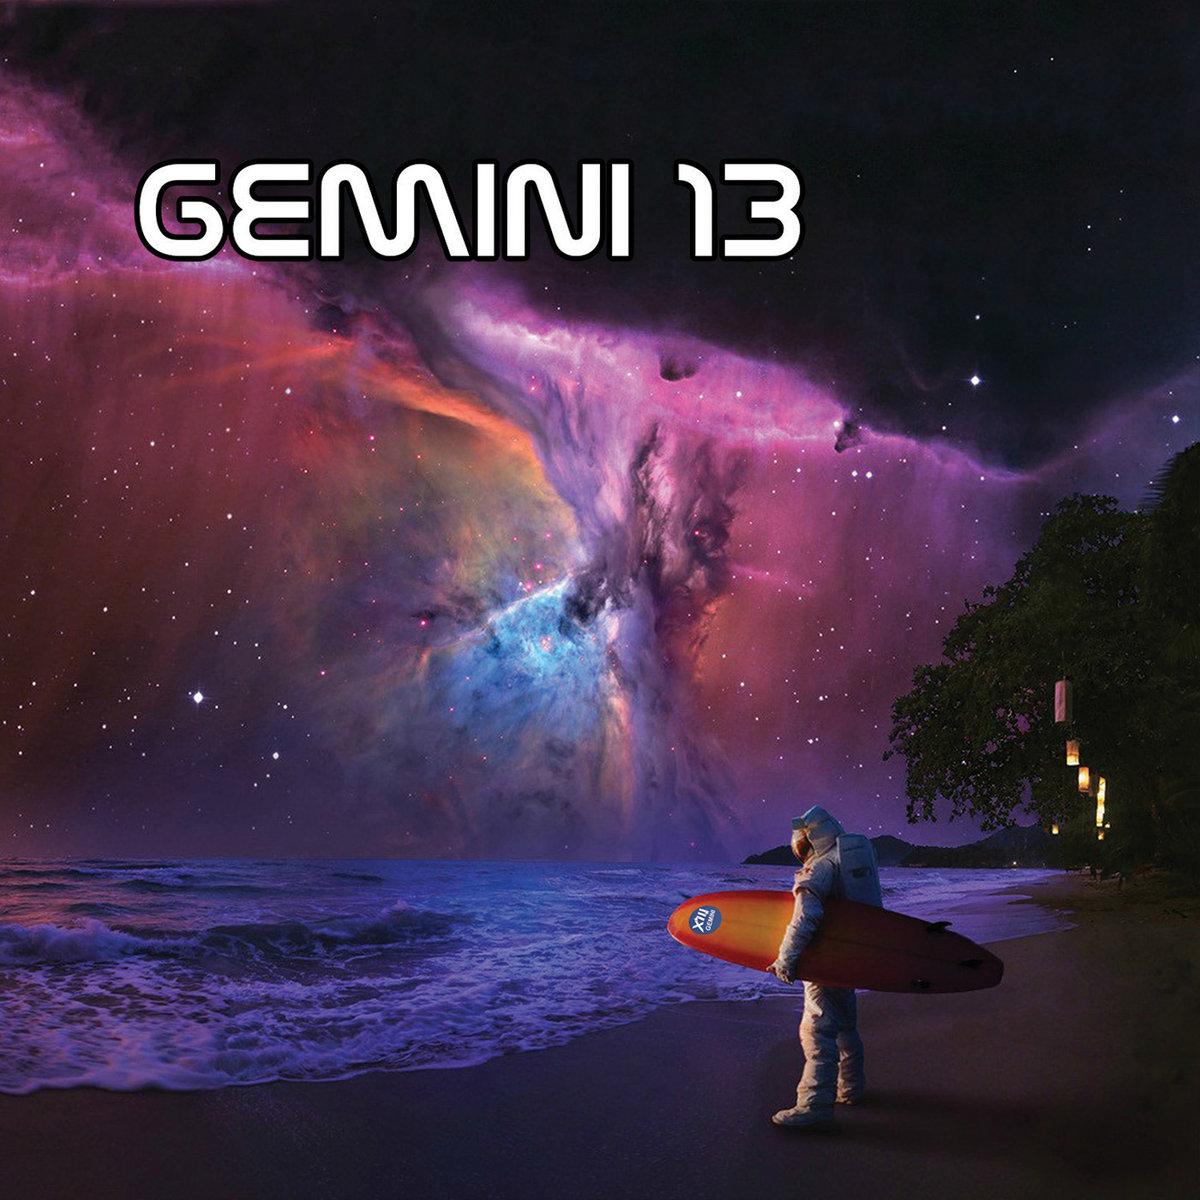 Gemini 13 - Gemini 13